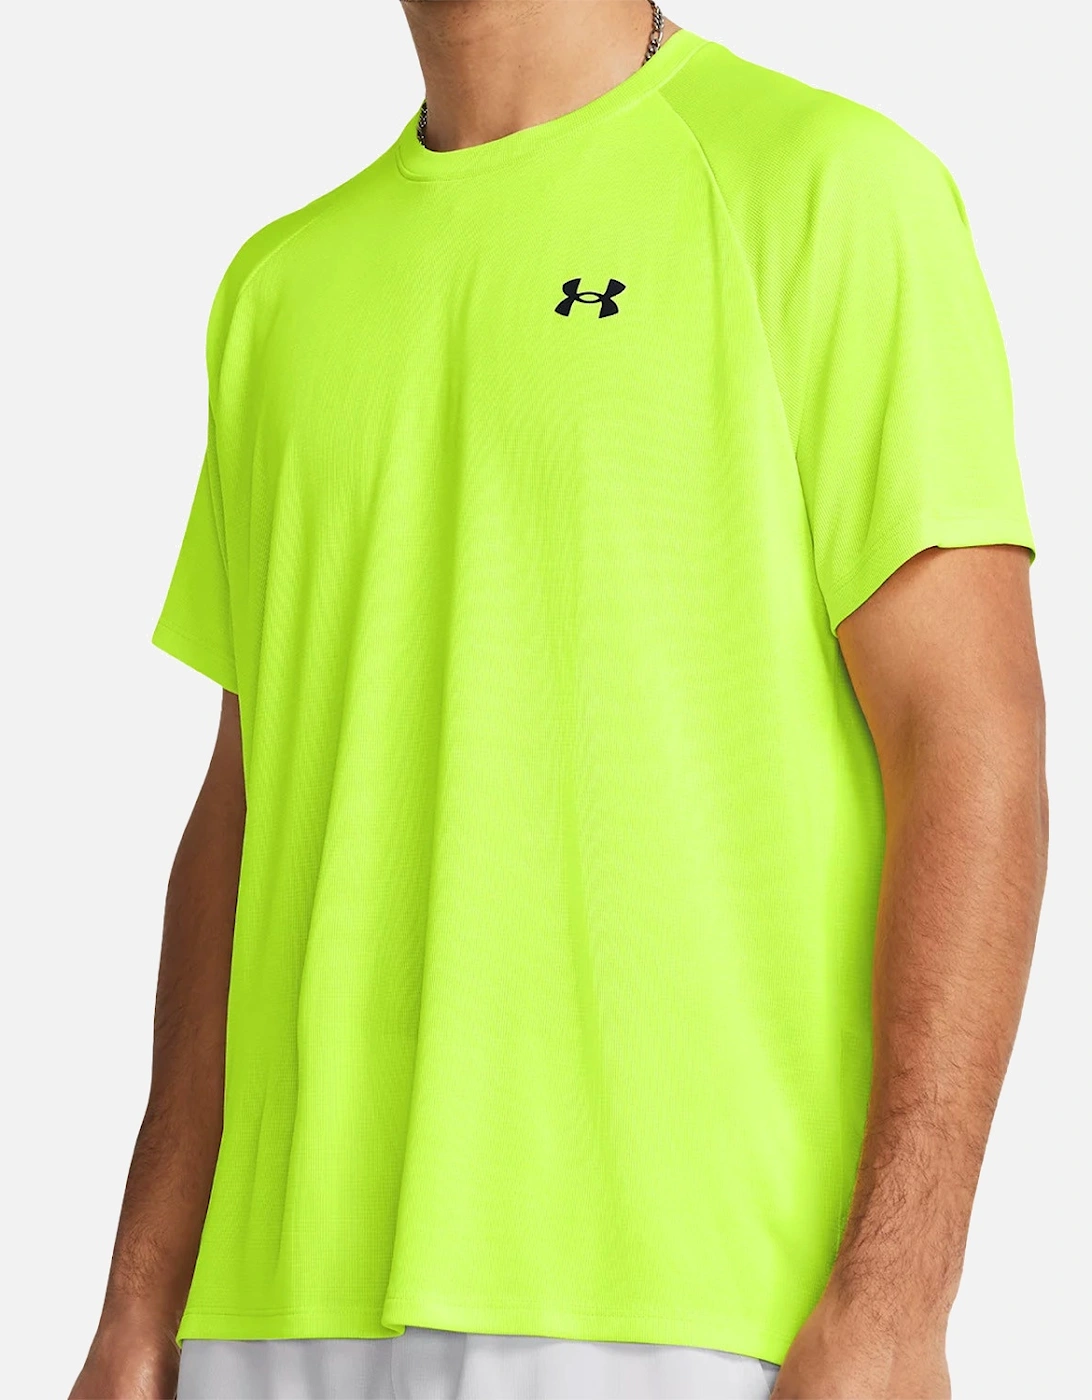 Mens Textured Tech T-Shirt (Yellow)